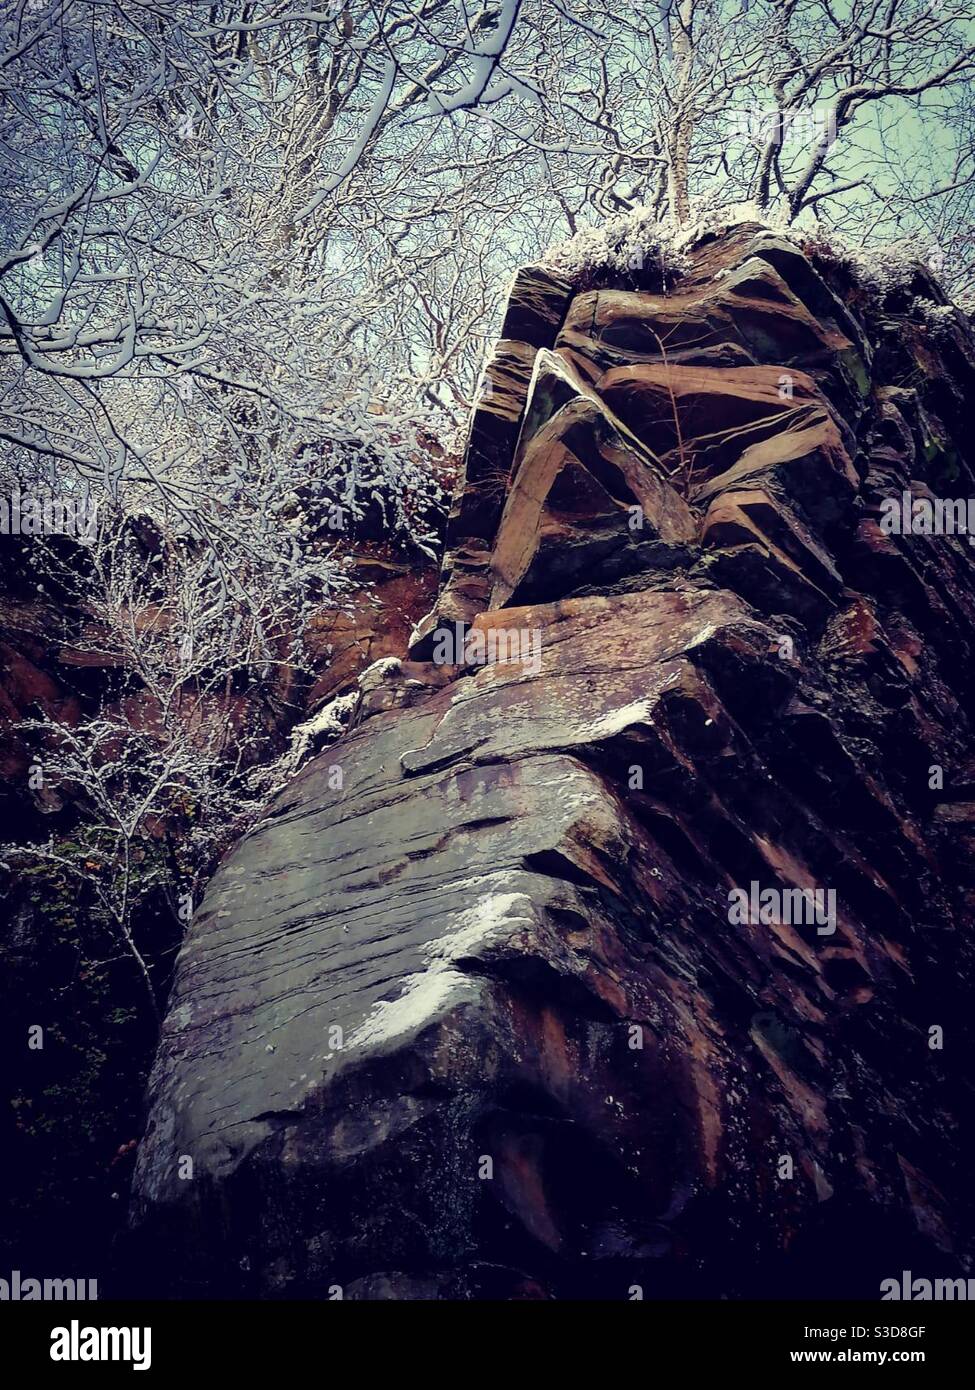 Una fotografia di una formazione rocciosa in cava in una mattinata invernale, con alberi coperti di neve Foto Stock